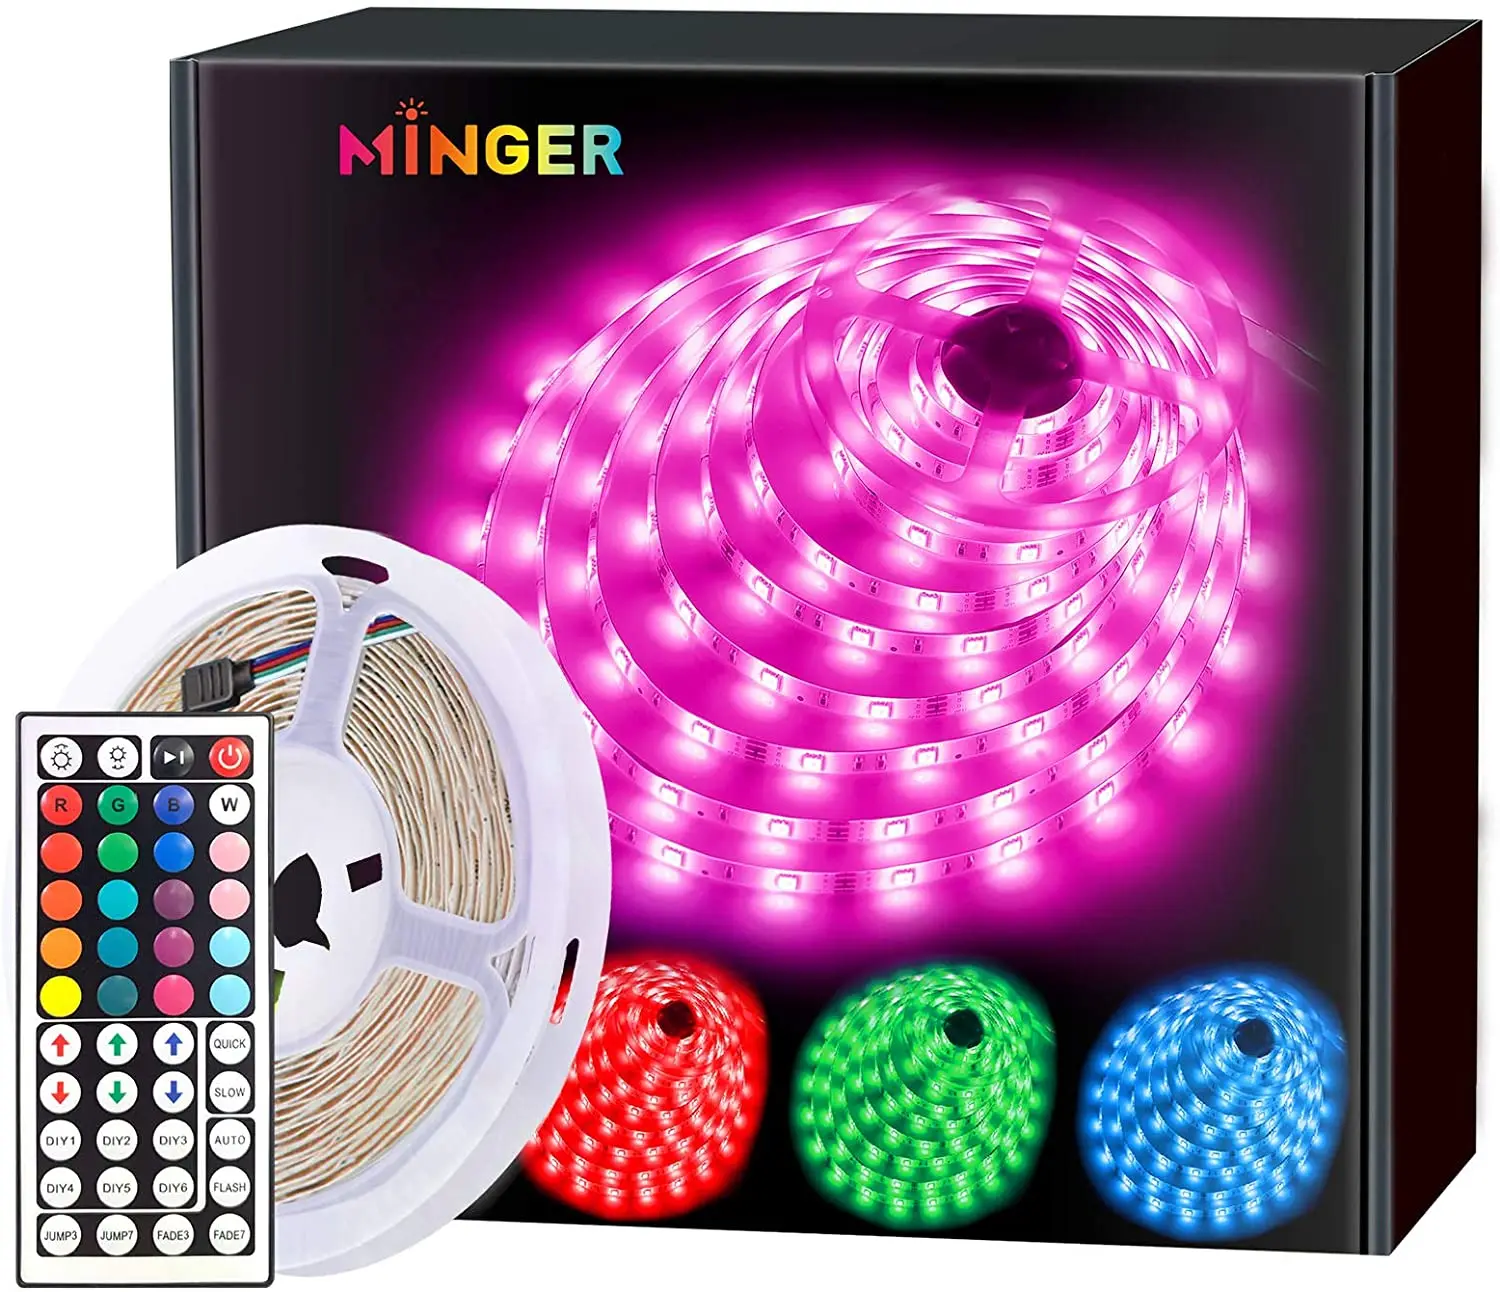 

Strip Lights 16.4ft, RGB Color Changing LED for Home, Kitchen, Bedroom, Dorm Room, Bar, with Remote Control, 5050 LEDs, DIY Mode